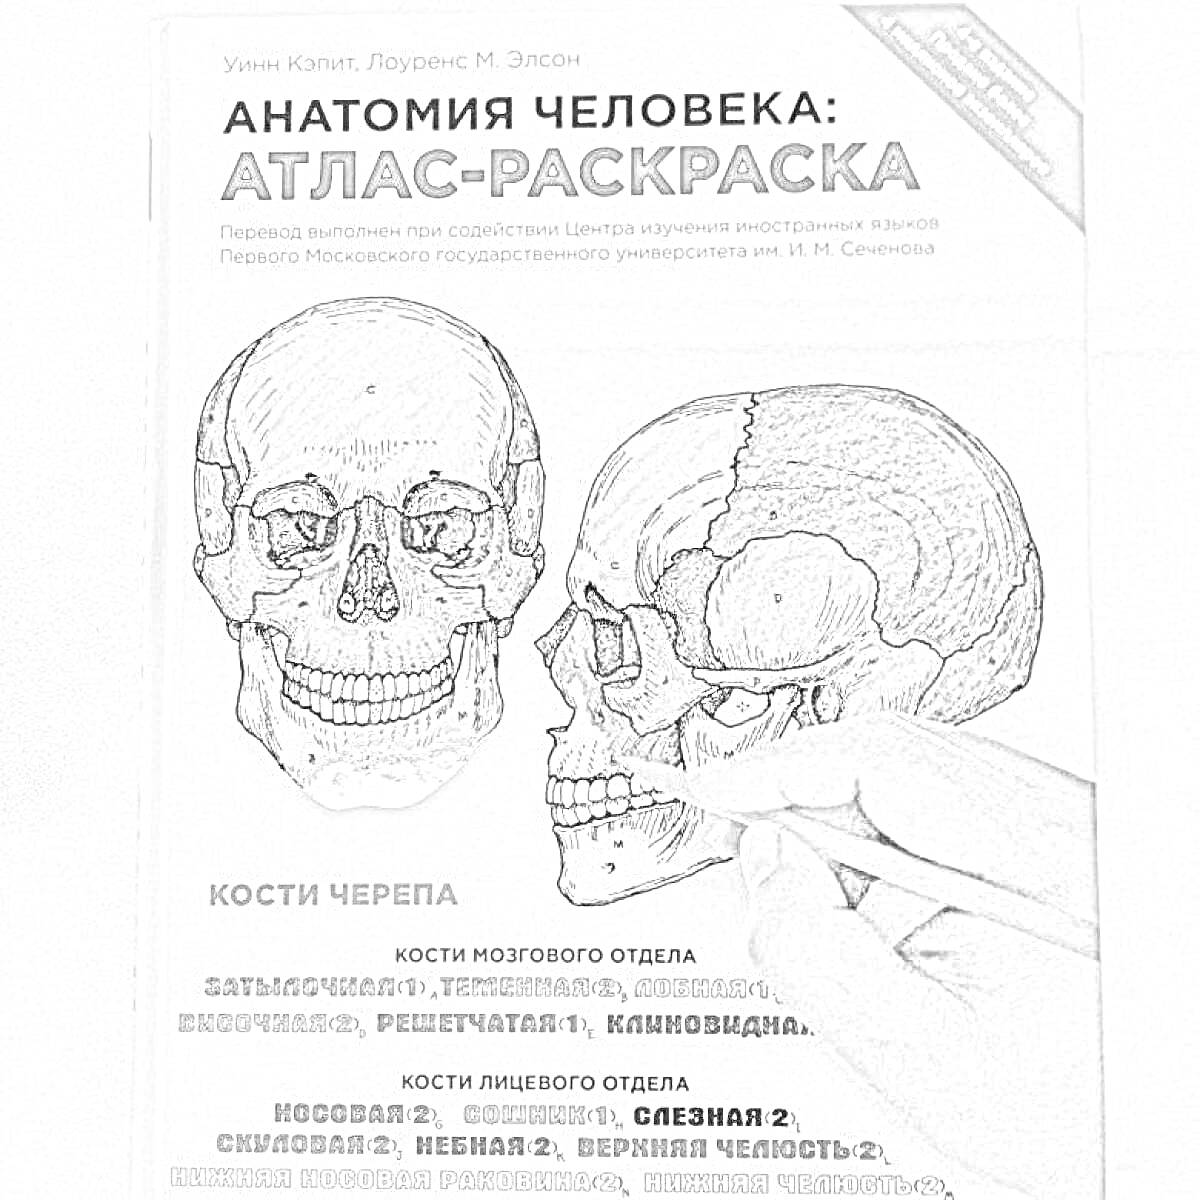 Раскраска Анатомия человека: Атлас-раскраска. Изображены черепа с обозначением костей мозгового и лицевого отделов черепа, с цветной заливкой различных секций.